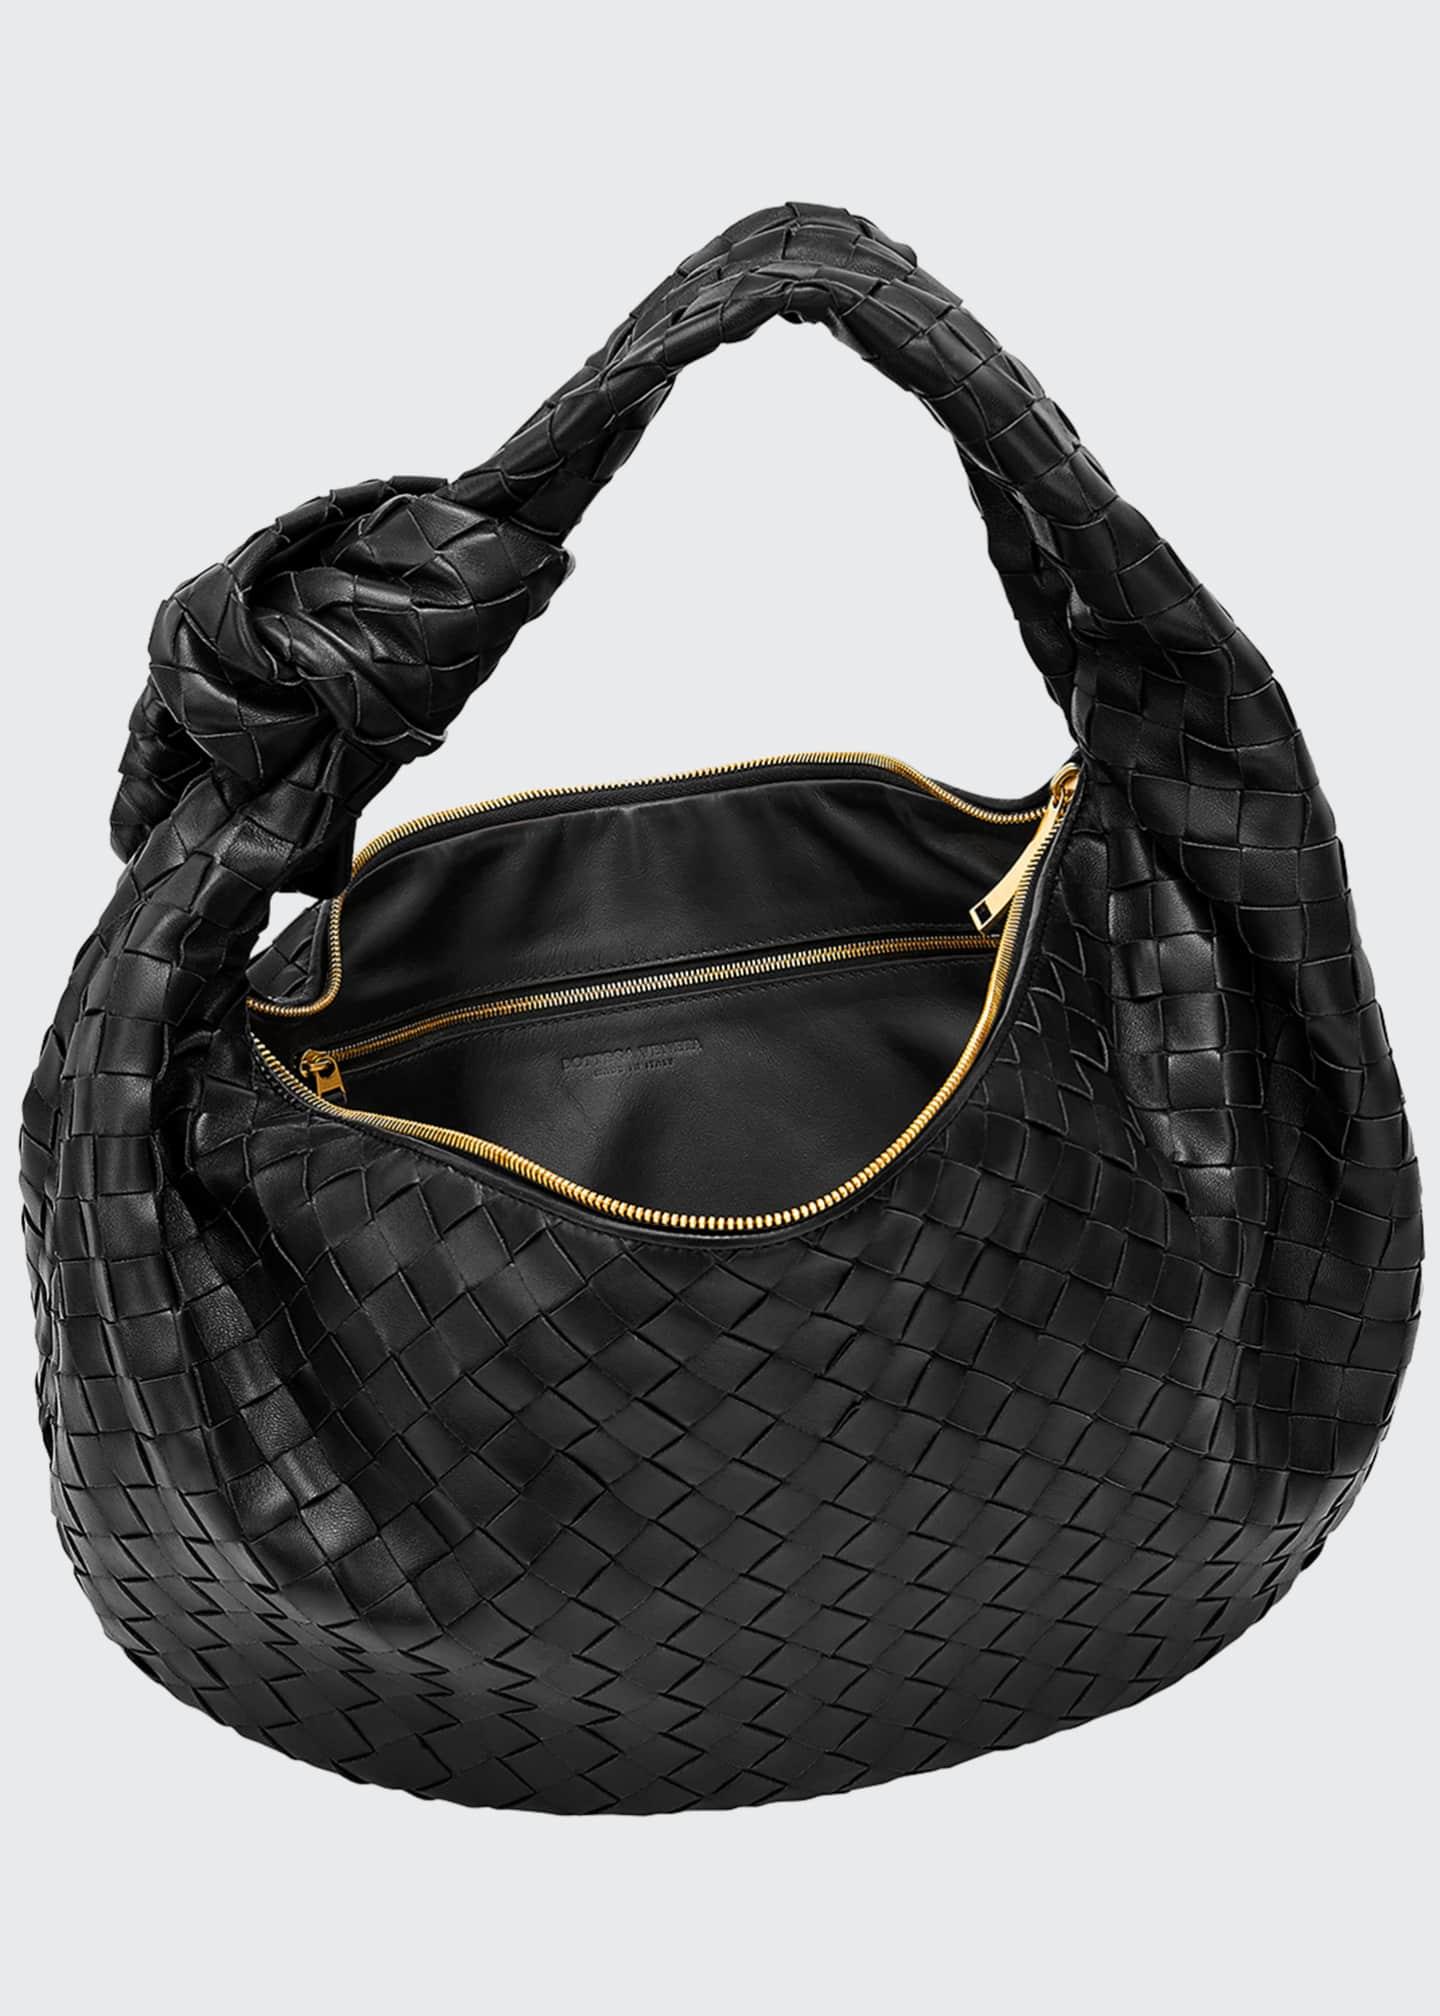 Bottega Veneta Leather Jodie Napa Intrecciato Small Hobo Bag in Brown